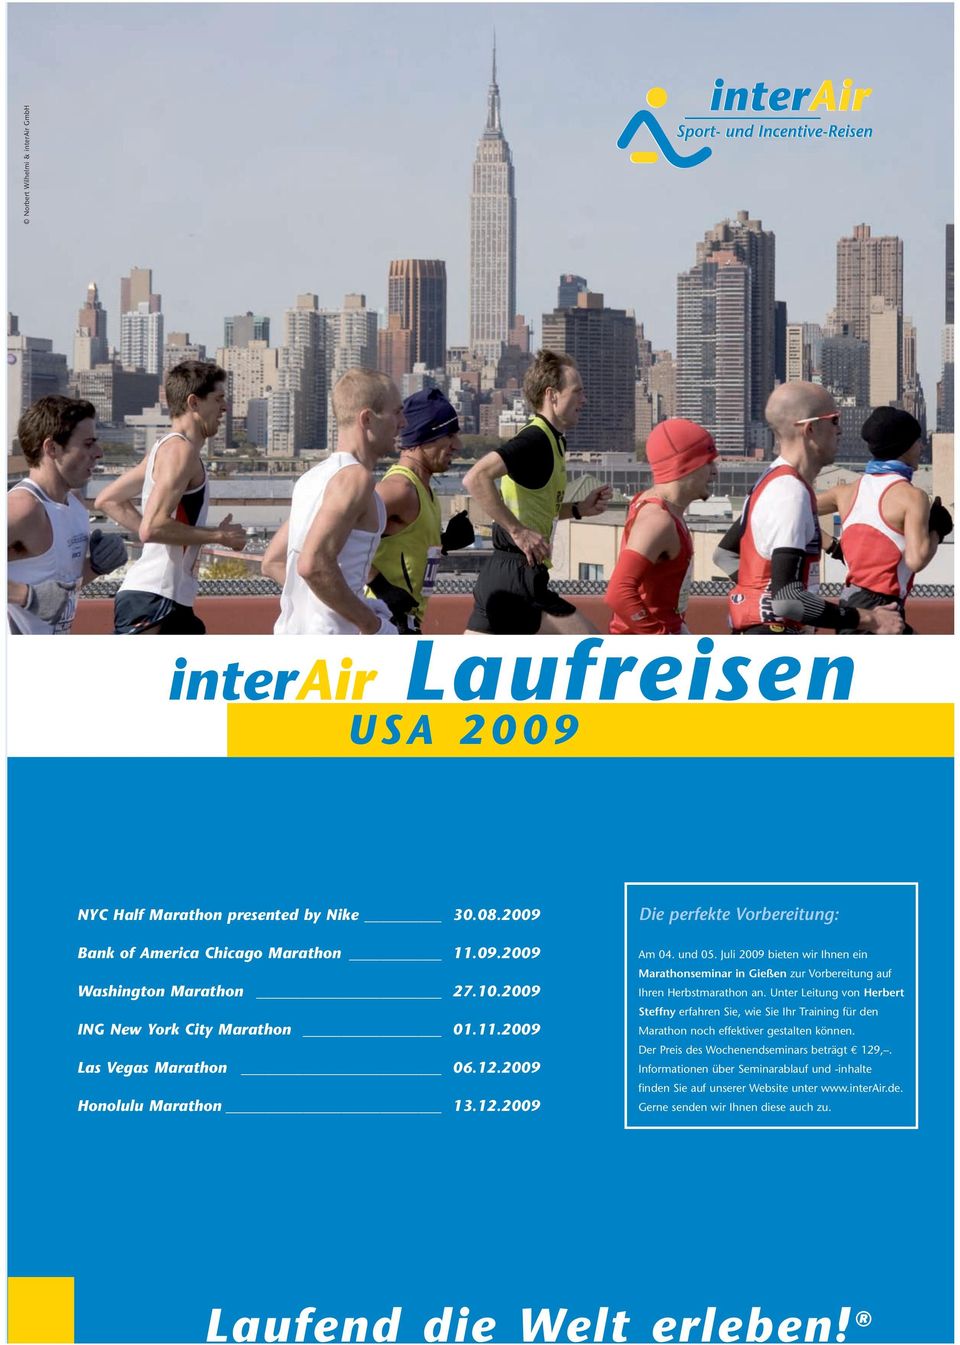 Juli 2009 bieten wir Ihnen ein Marathonseminar in Gießen zur Vorbereitung auf Ihren Herbstmarathon an.